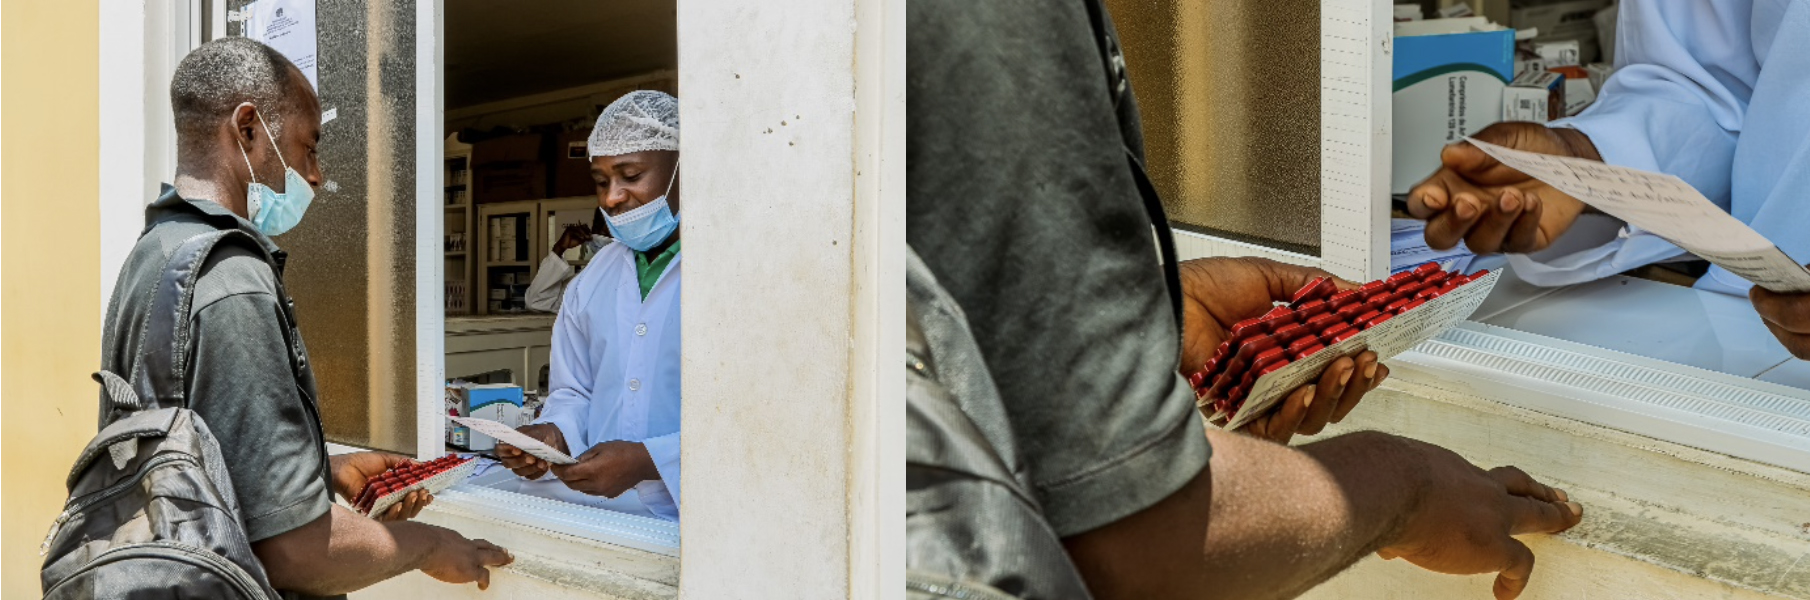 Os pacientes são encaminhados a unidades de saúde locais, onde podem realizar testes de tuberculose e receber medicamentos gratuitos após o diagnóstico. Fotos: PNUD Angola